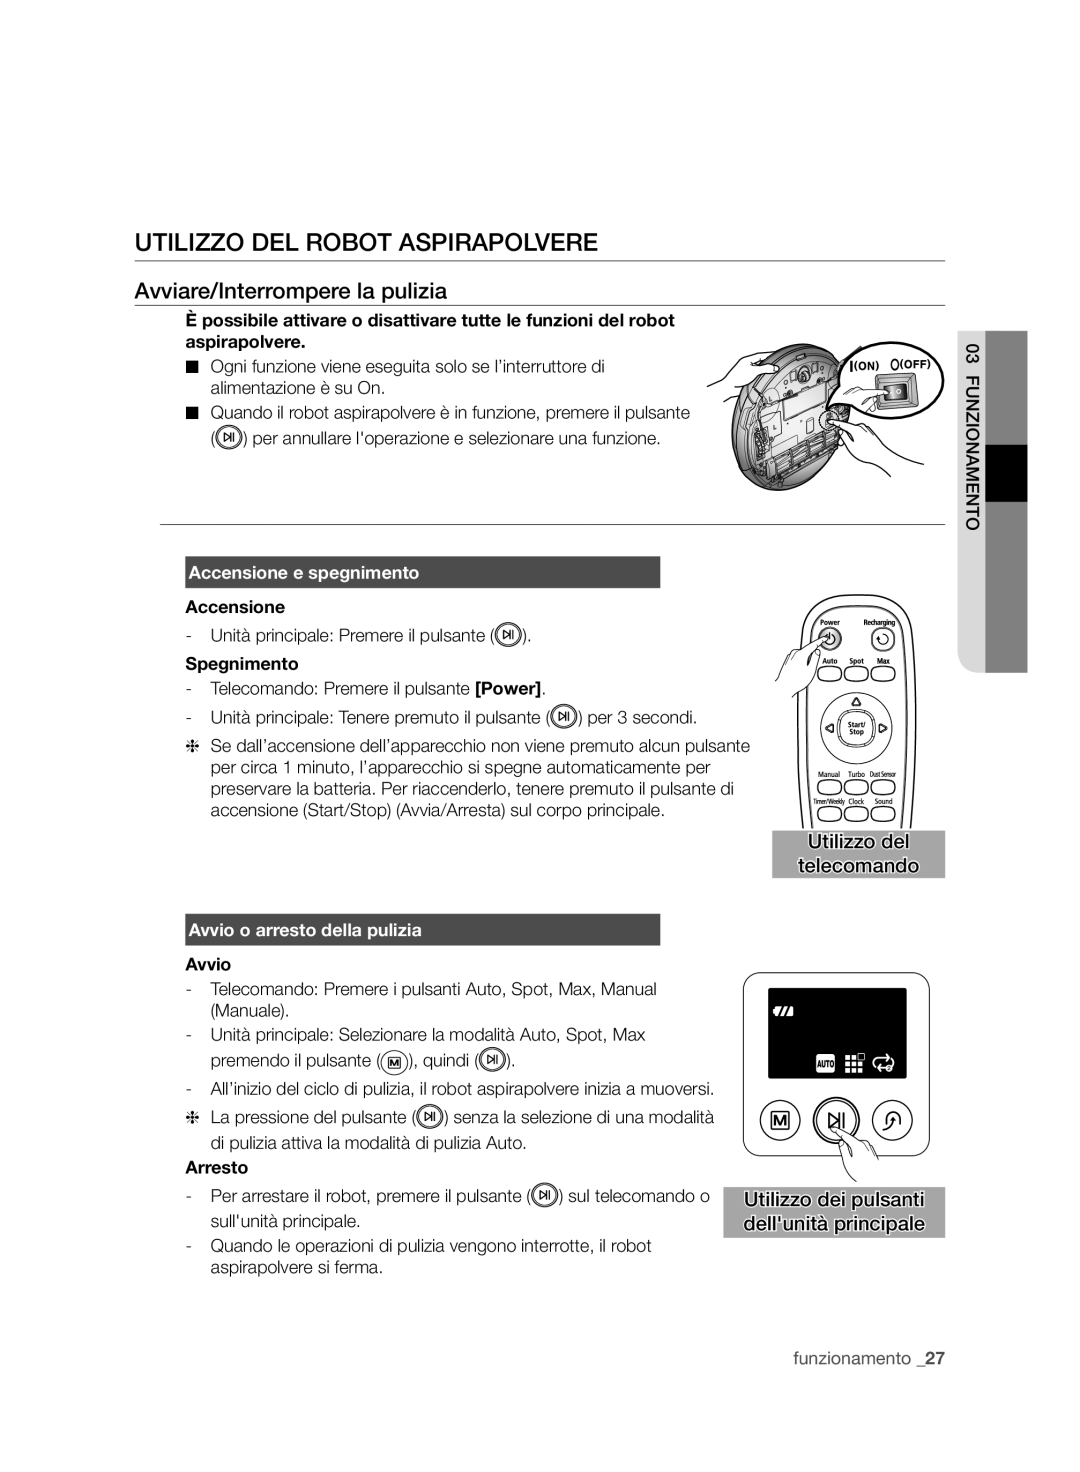 Samsung VCR8950L3B/XEF Utilizzo Del Robot Aspirapolvere, Avviare/Interrompere la pulizia, Utilizzo del telecomando, Avvio 